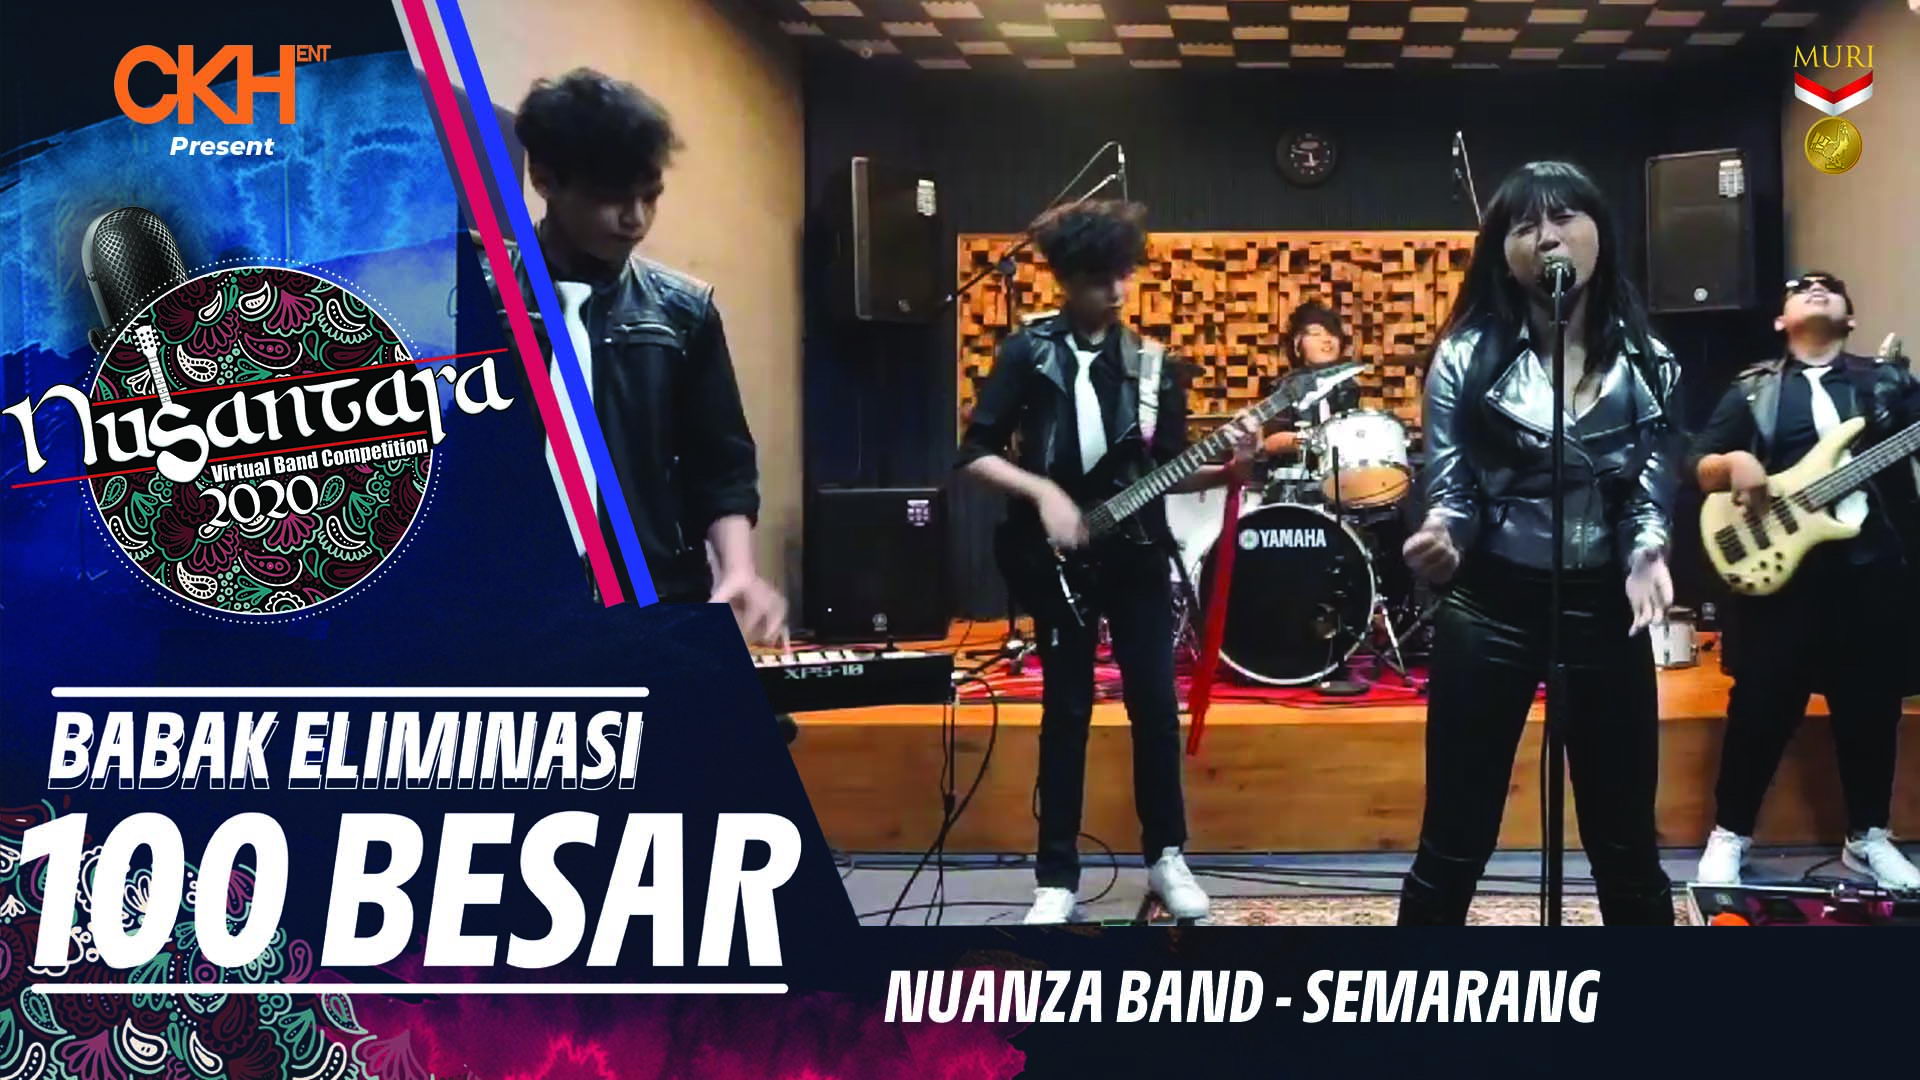 Nuanza Band - Eliminasi 100 Besar Nusantara Virtual Band Competition